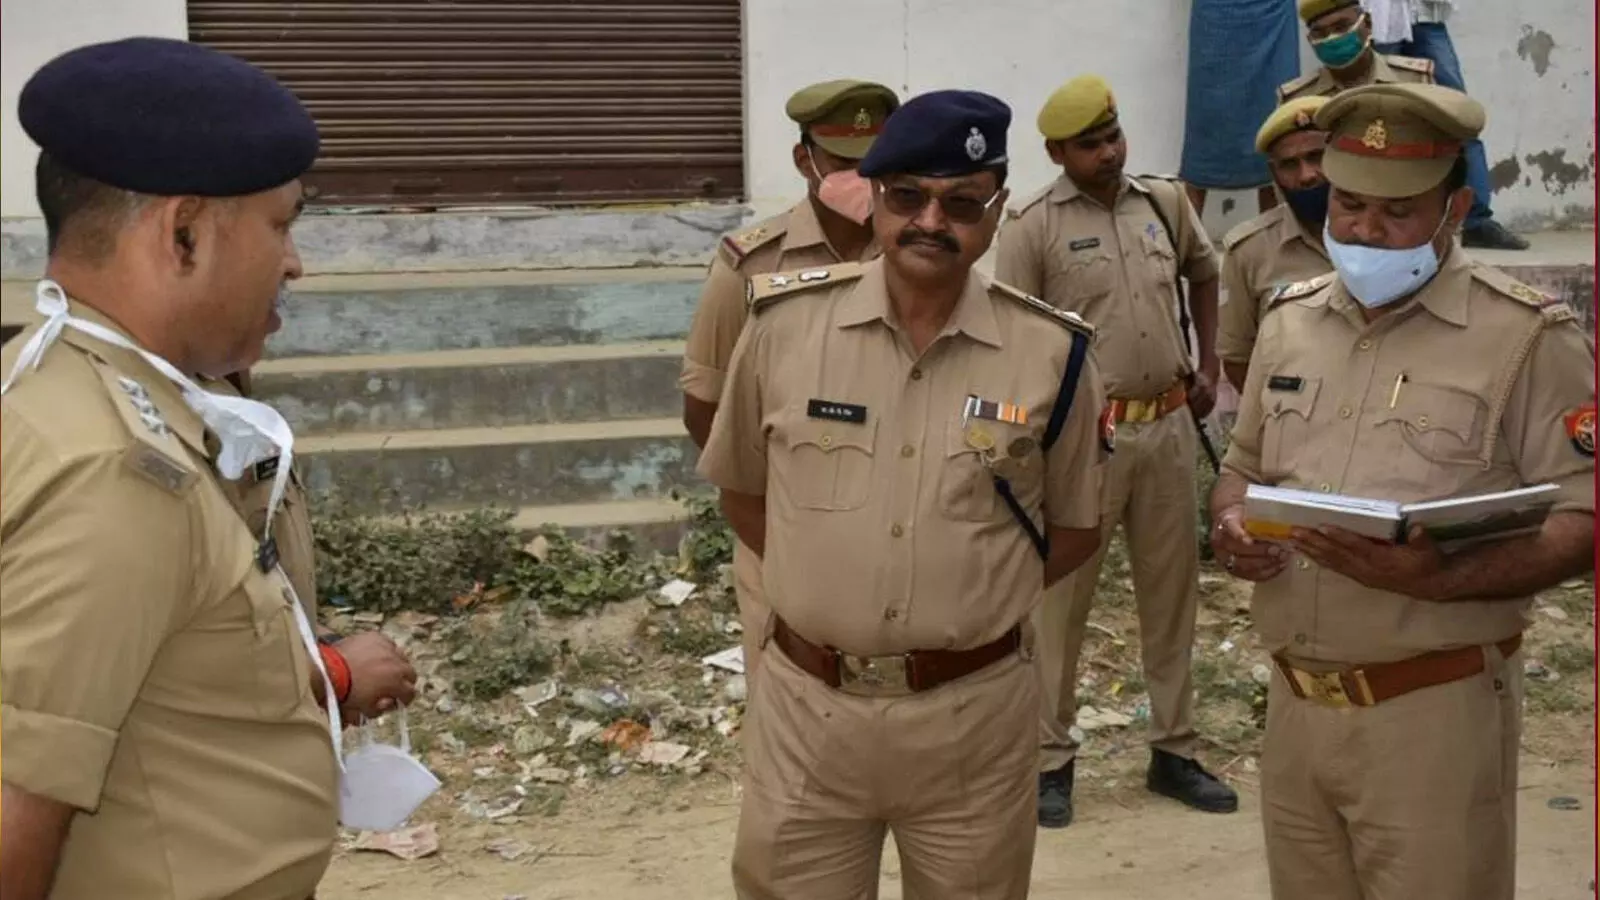 गाजीपुर में बदमाशों के हौशले बुलंद, दो सेल्समैनों को मारी गोली